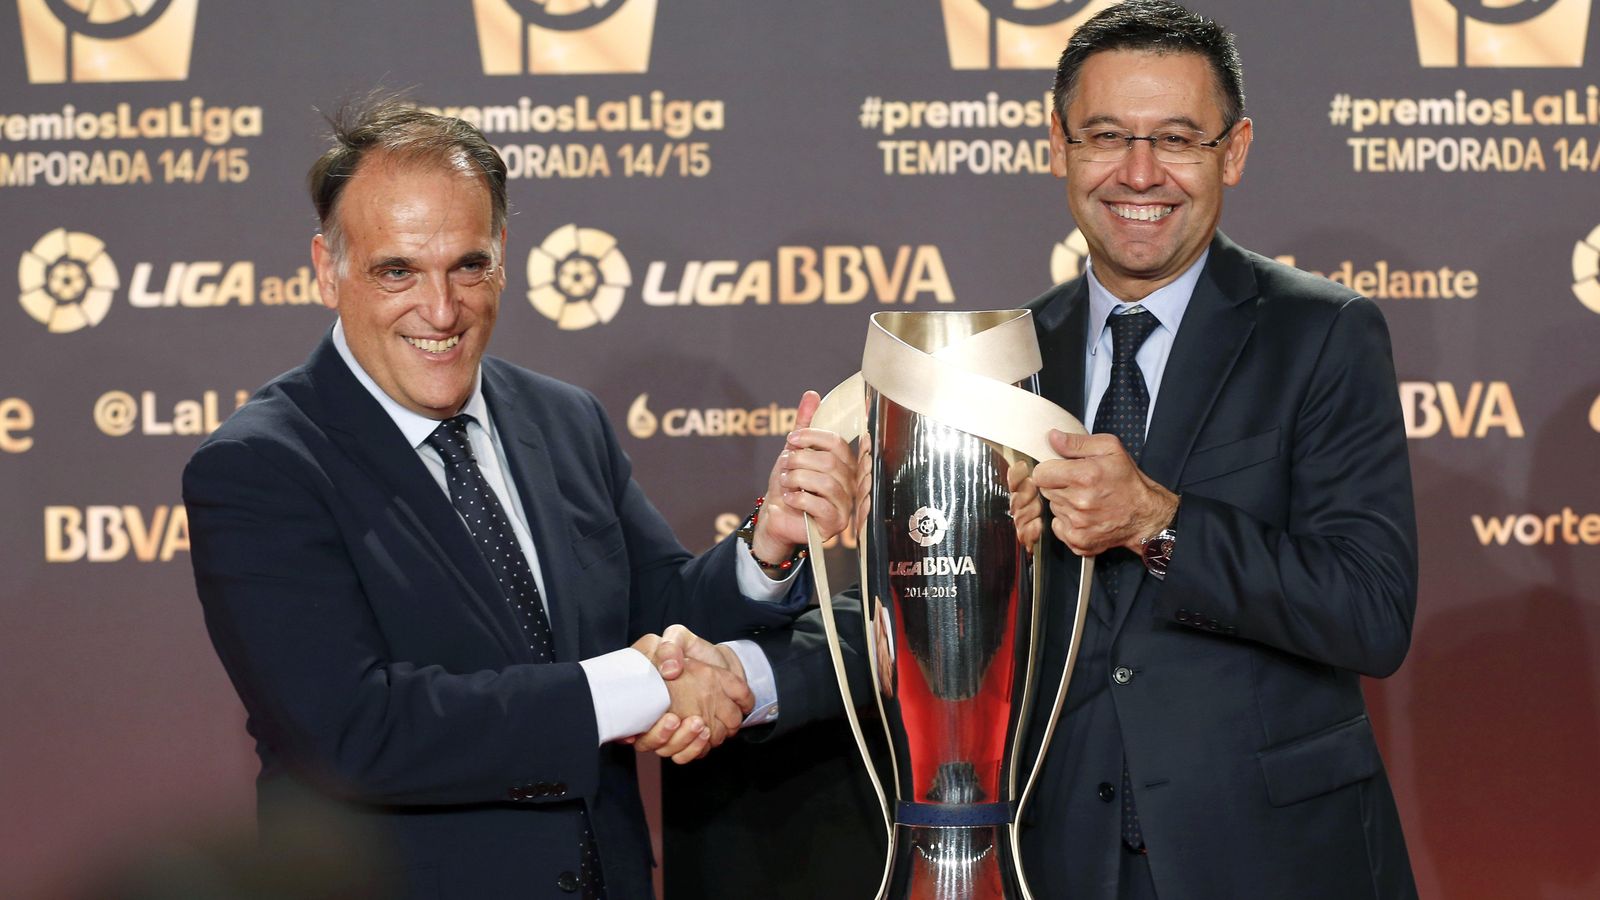 Foto: El presidente de la Liga de Fútbol Profesional, Javier Tebas, junto al del FC Barcelona, Josep María Bartomeu. (EFE)